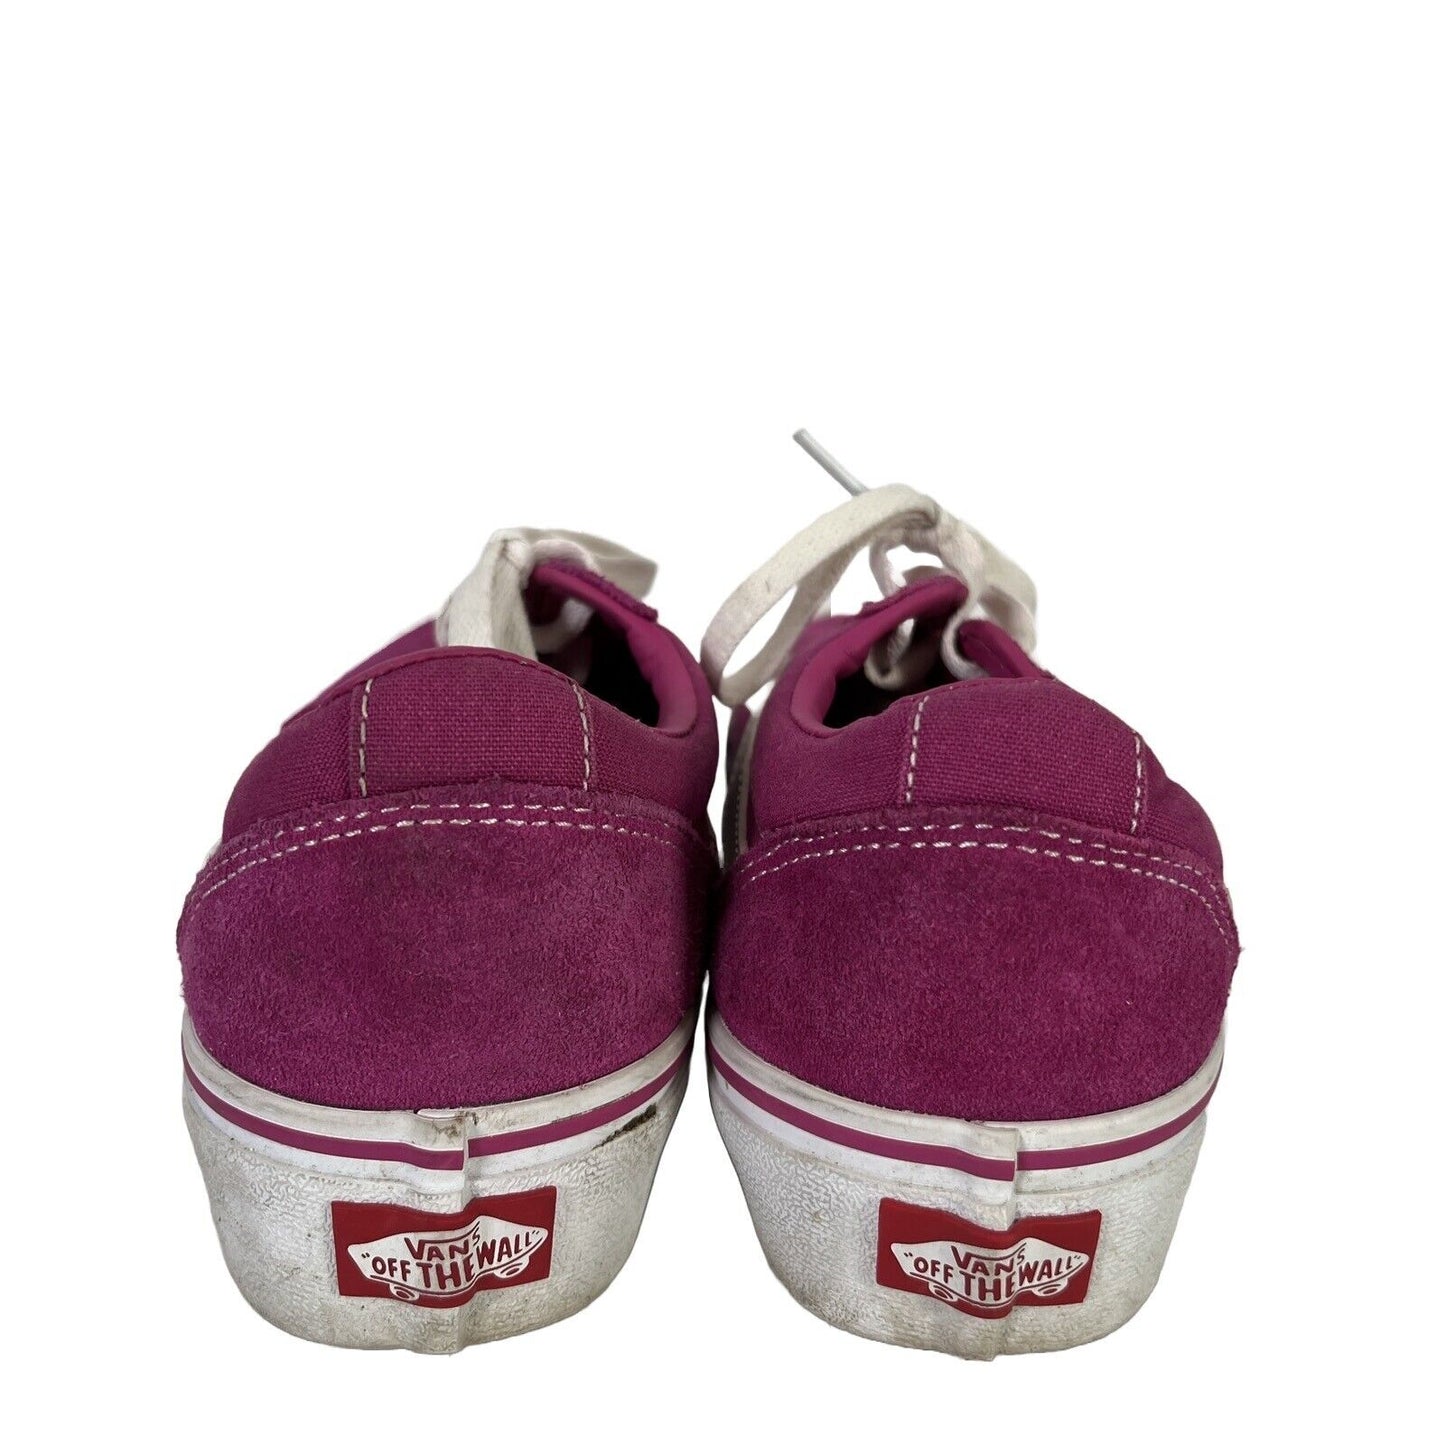 Vans Women's Pink Suede Platform Sneakers Shoes - 7